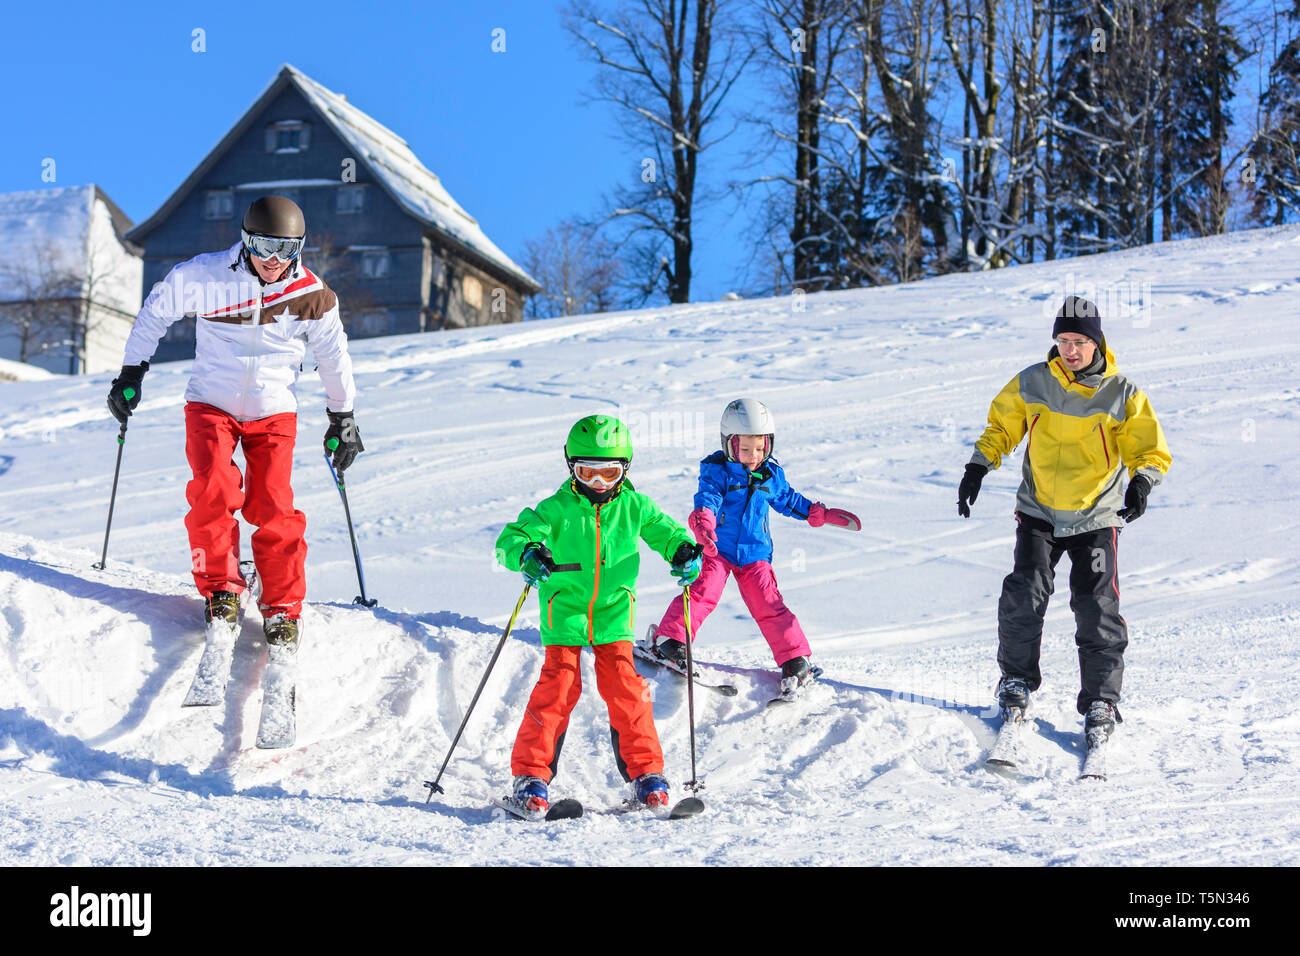 Le ski avec les enfants sur la journée d'hiver ensoleillée Banque D'Images